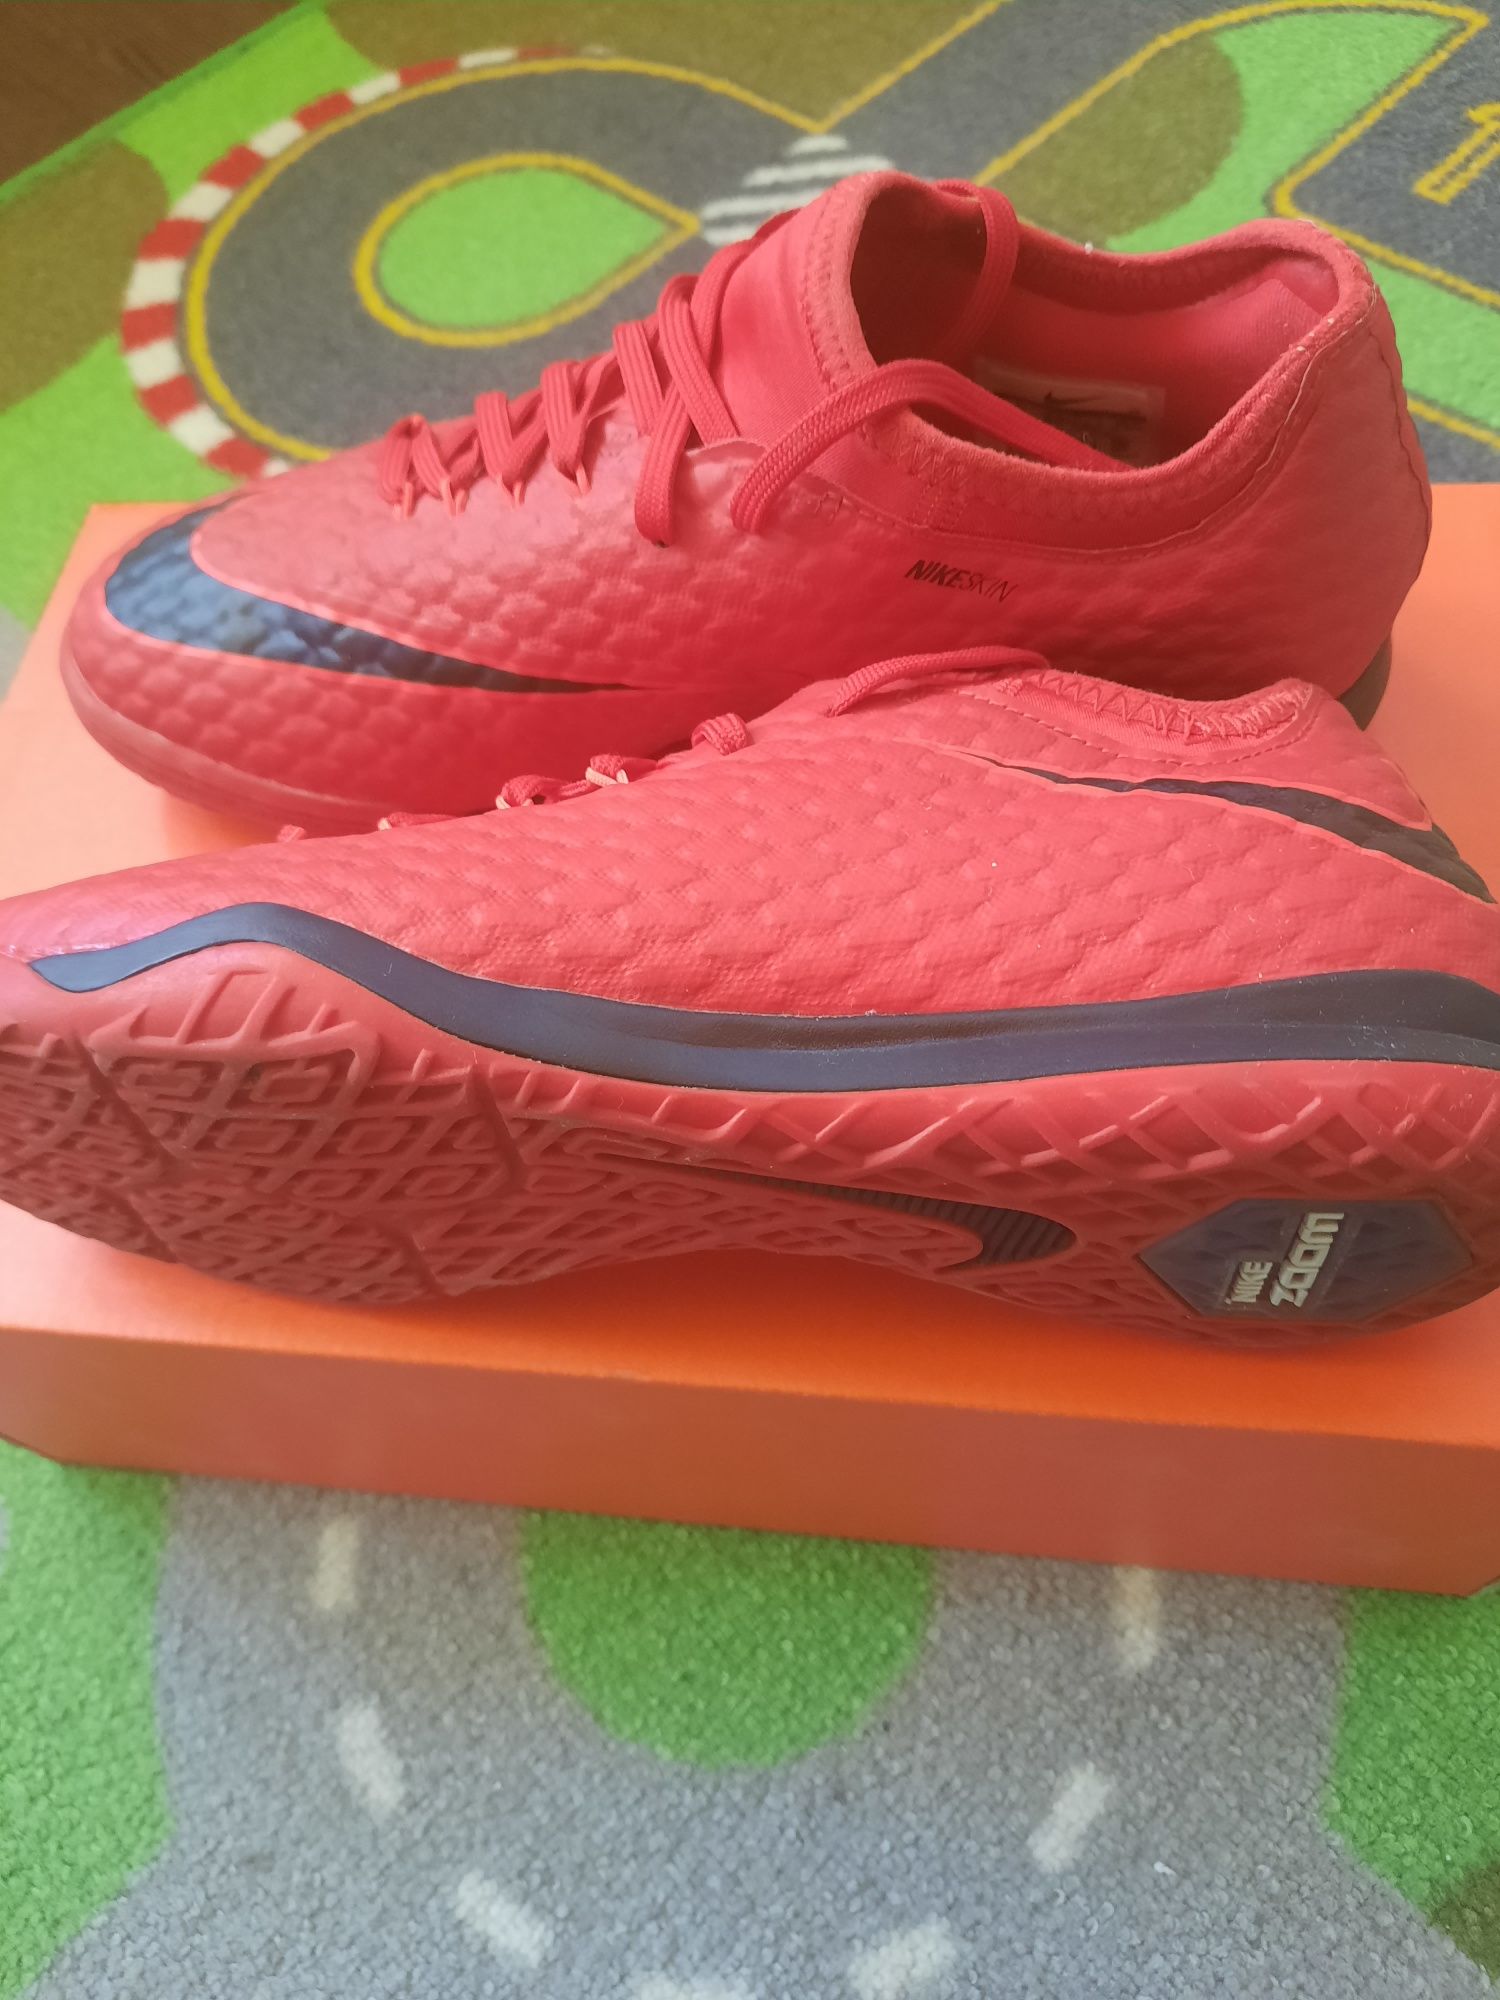 Продам Новую Футбольную Обувь Nike ( футзалки ) 40.5 р 25.5 см стелька